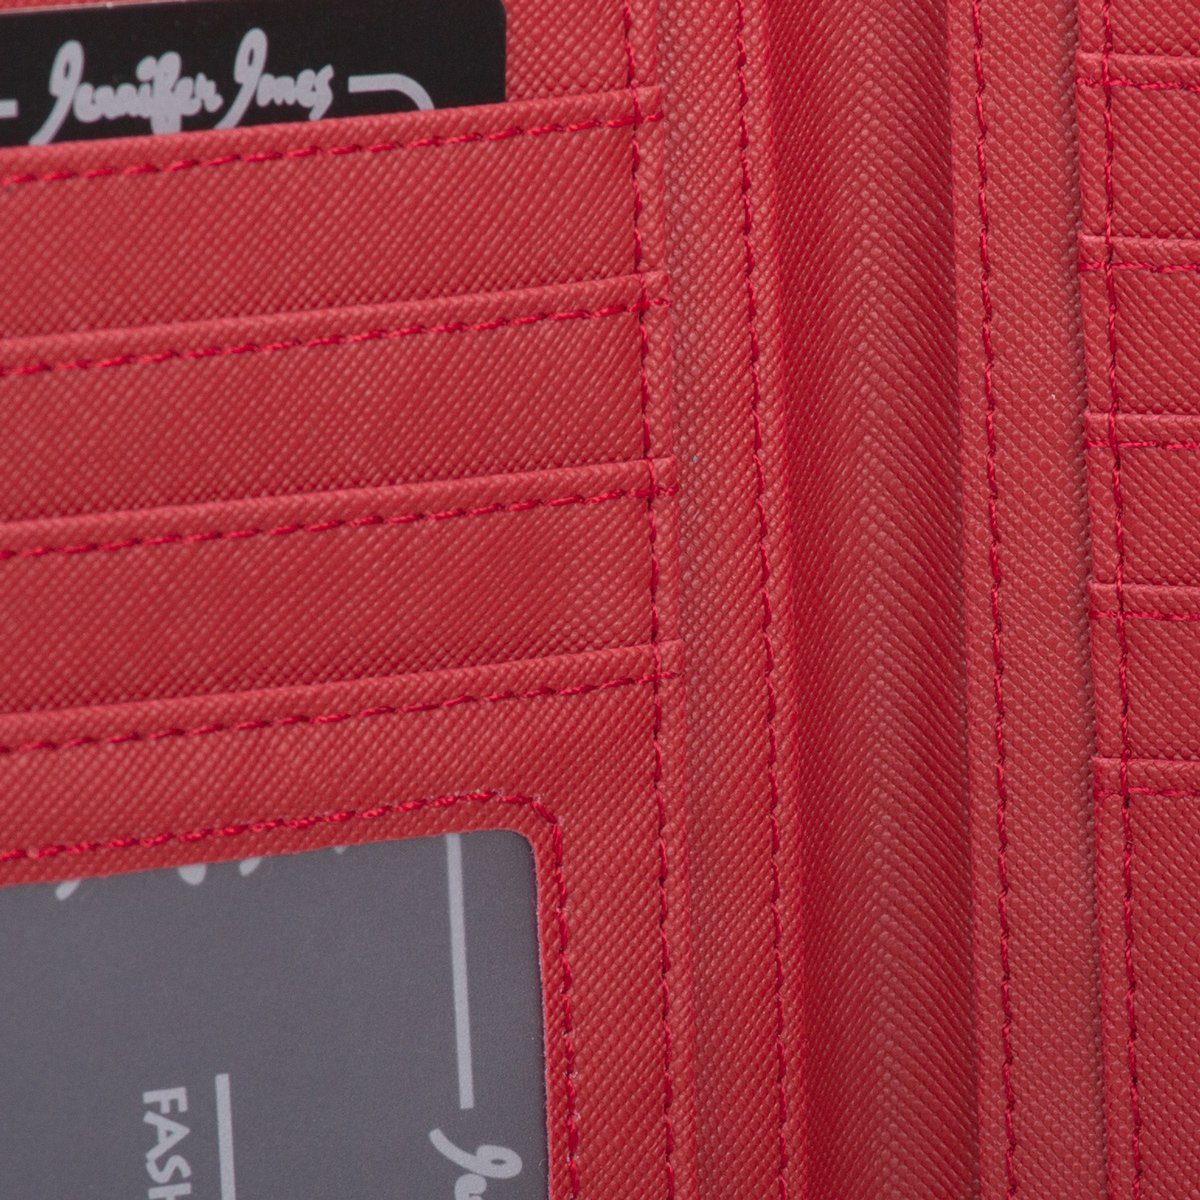 Jones Jennifer Geldbörse klappbar Portemonnaie Reißverschluss rot Damen mit Geldbeutel Geldbörse,